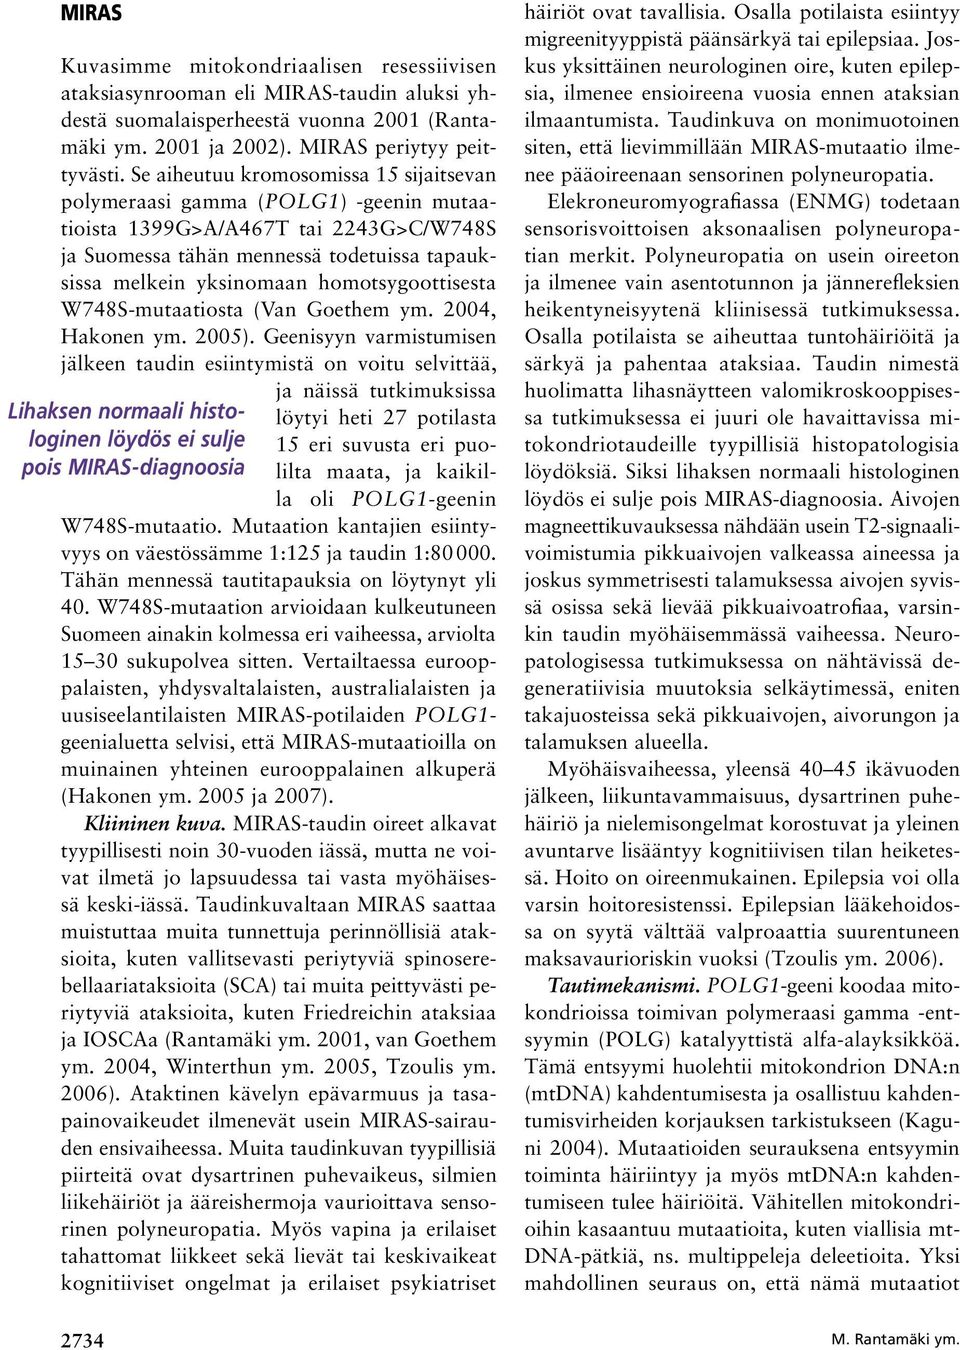 homotsygoottisesta W748S-mutaatiosta (Van Goethem ym. 2004, Hakonen ym. 2005).